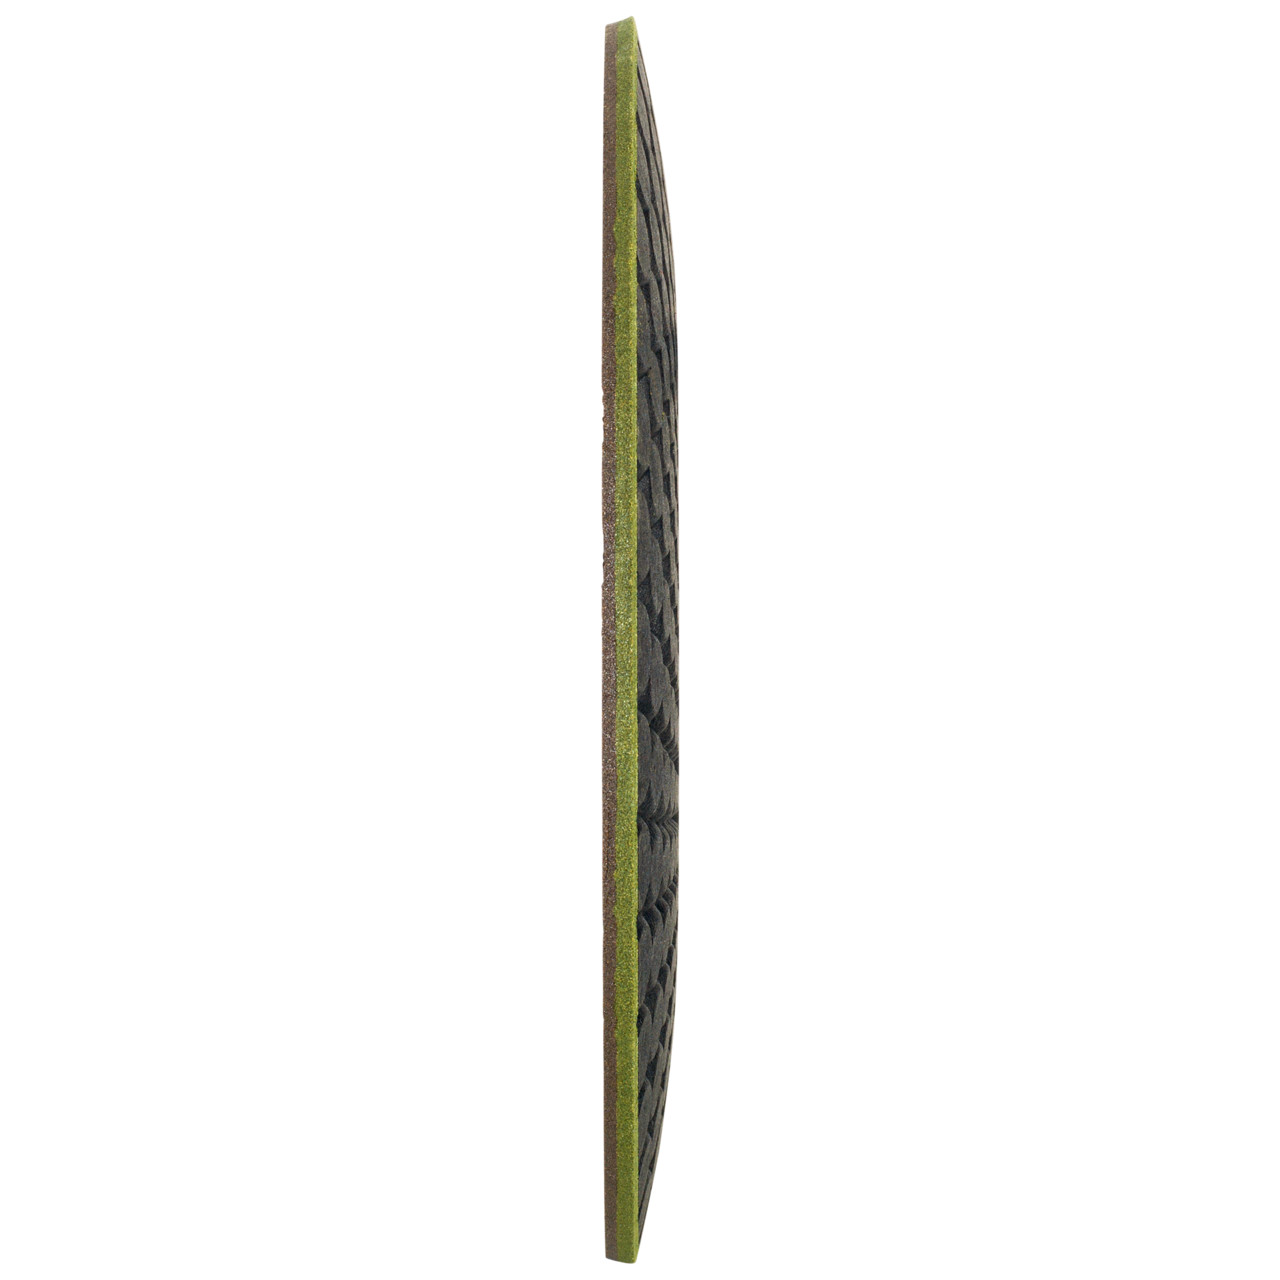 TYROLIT RONDELLER DxH 115x22.23 Voor steen, vorm: 29RON (Rondeller®), Art. 908233